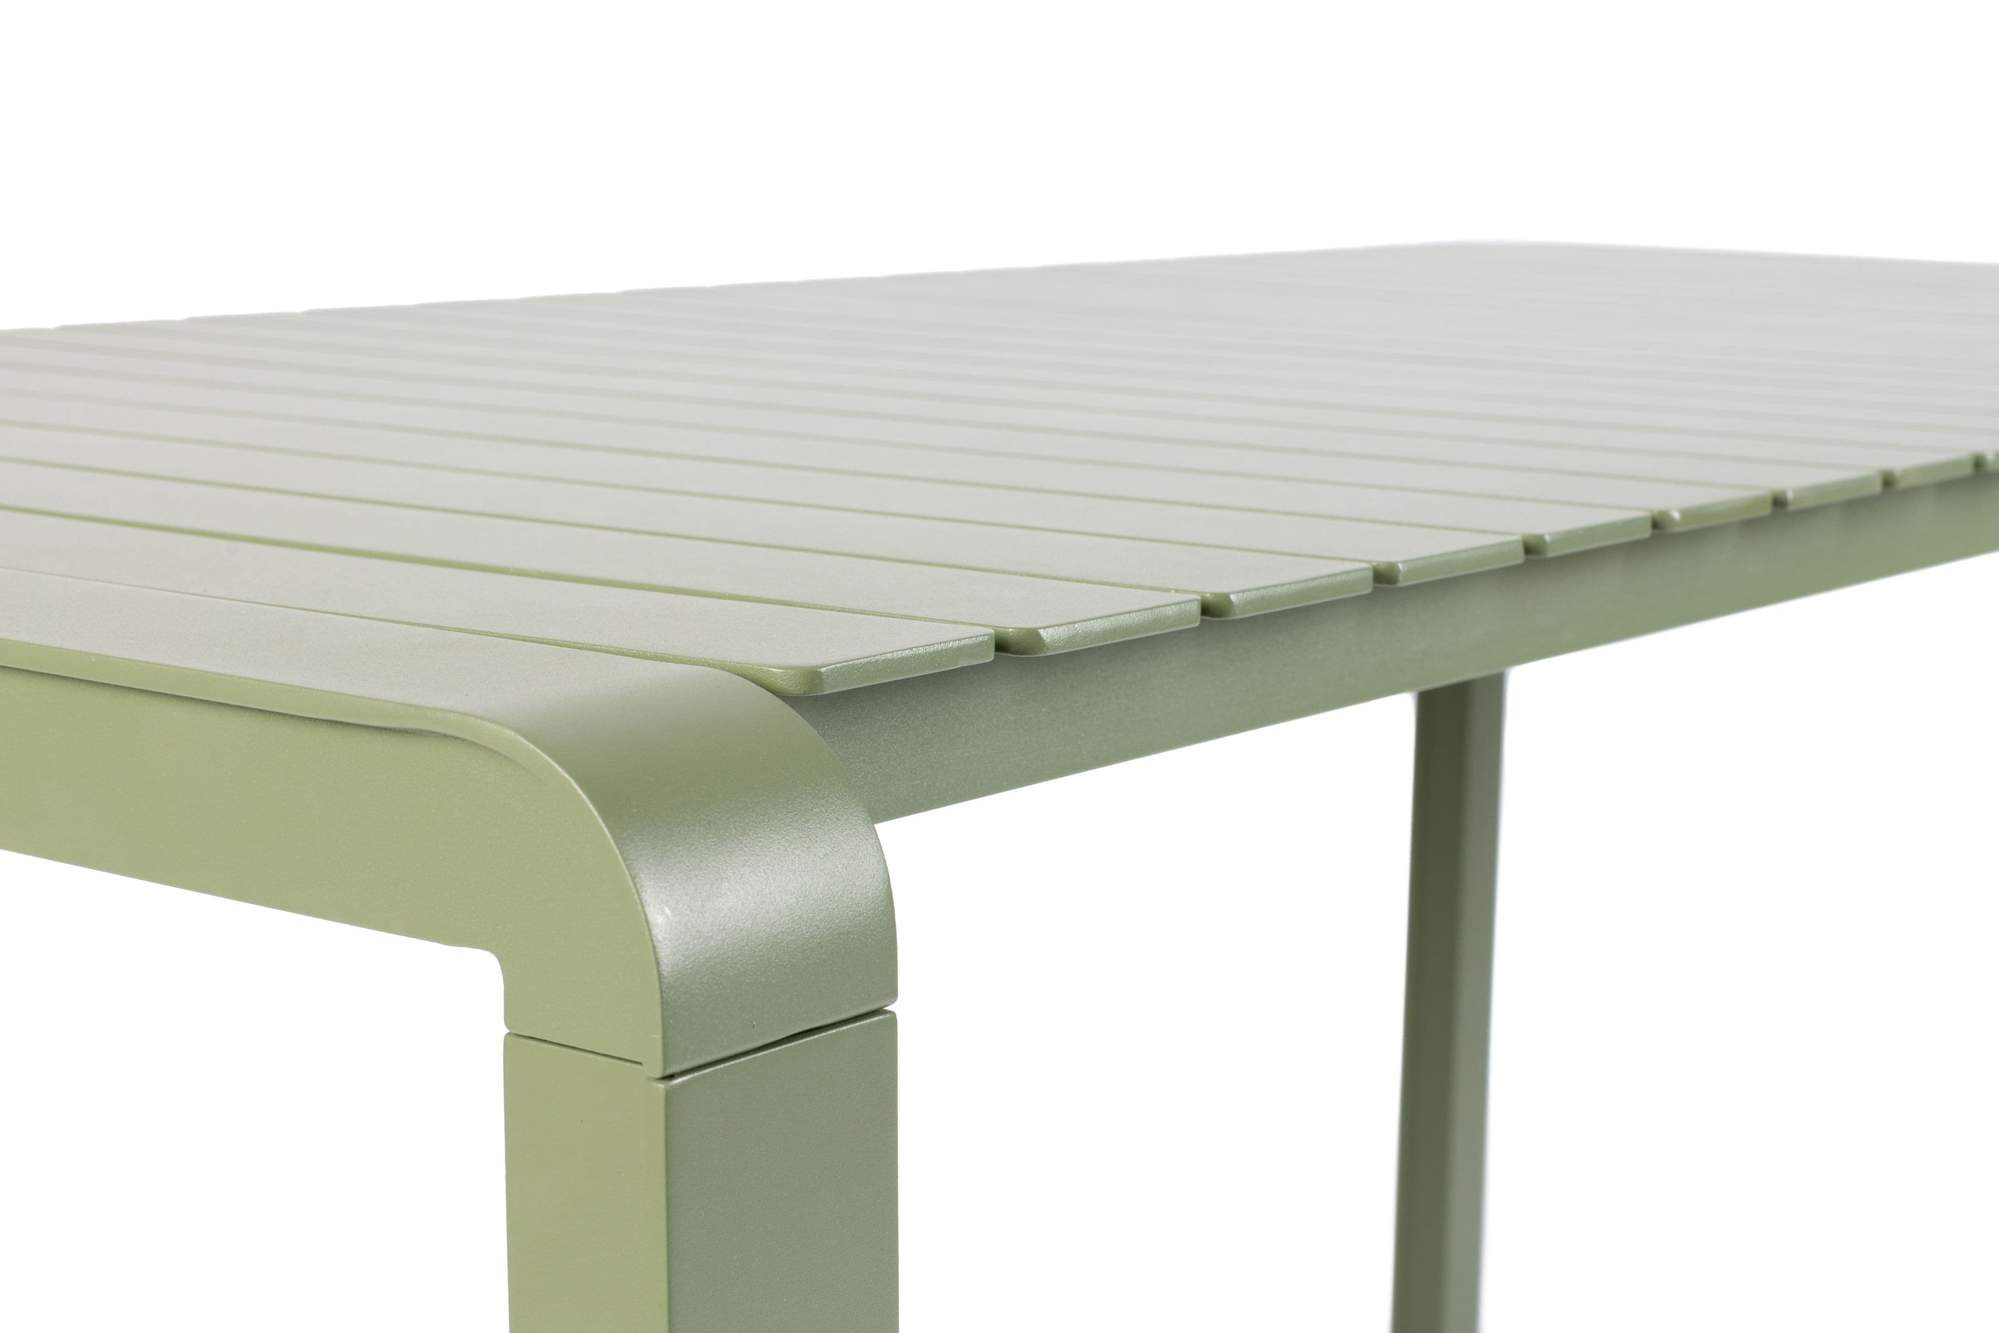 Rent a Garden table Vondel 214x97 green? Rent at KeyPro furniture rental!